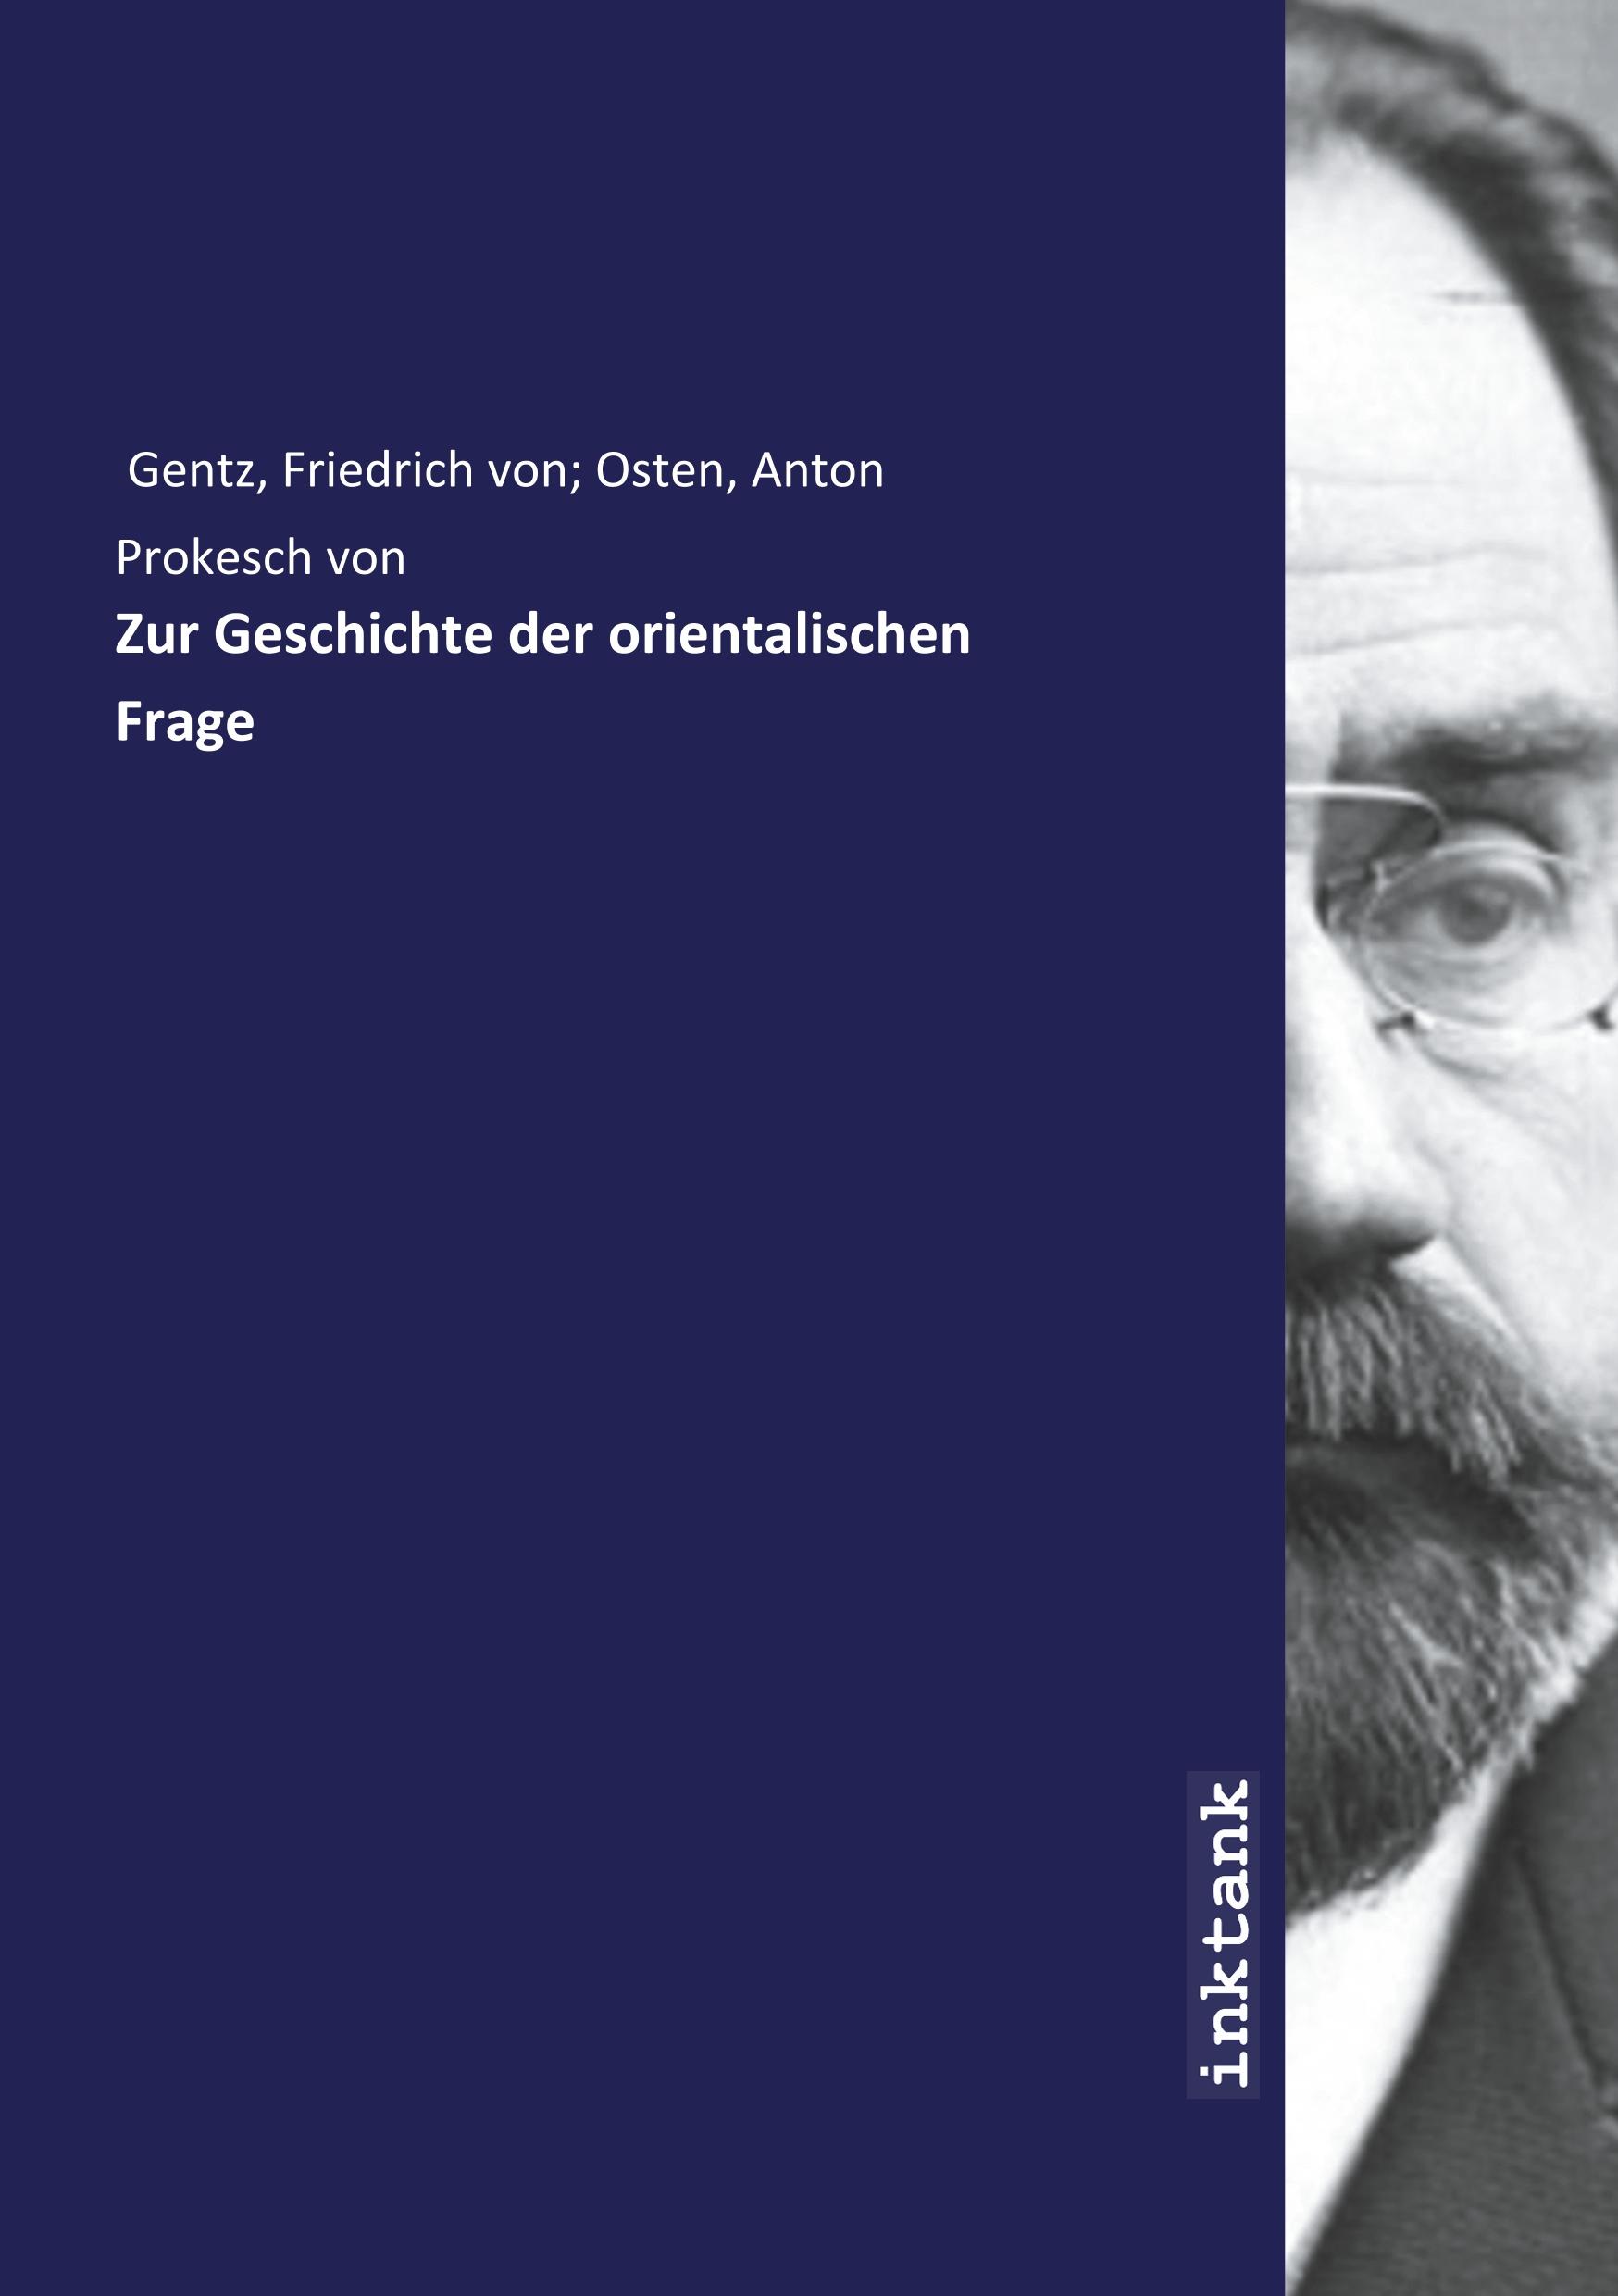 Zur Geschichte der orientalischen Frage - Gentz, Friedrich von, 1764-1832,Prokesch von Osten, Anton, Graf, 183